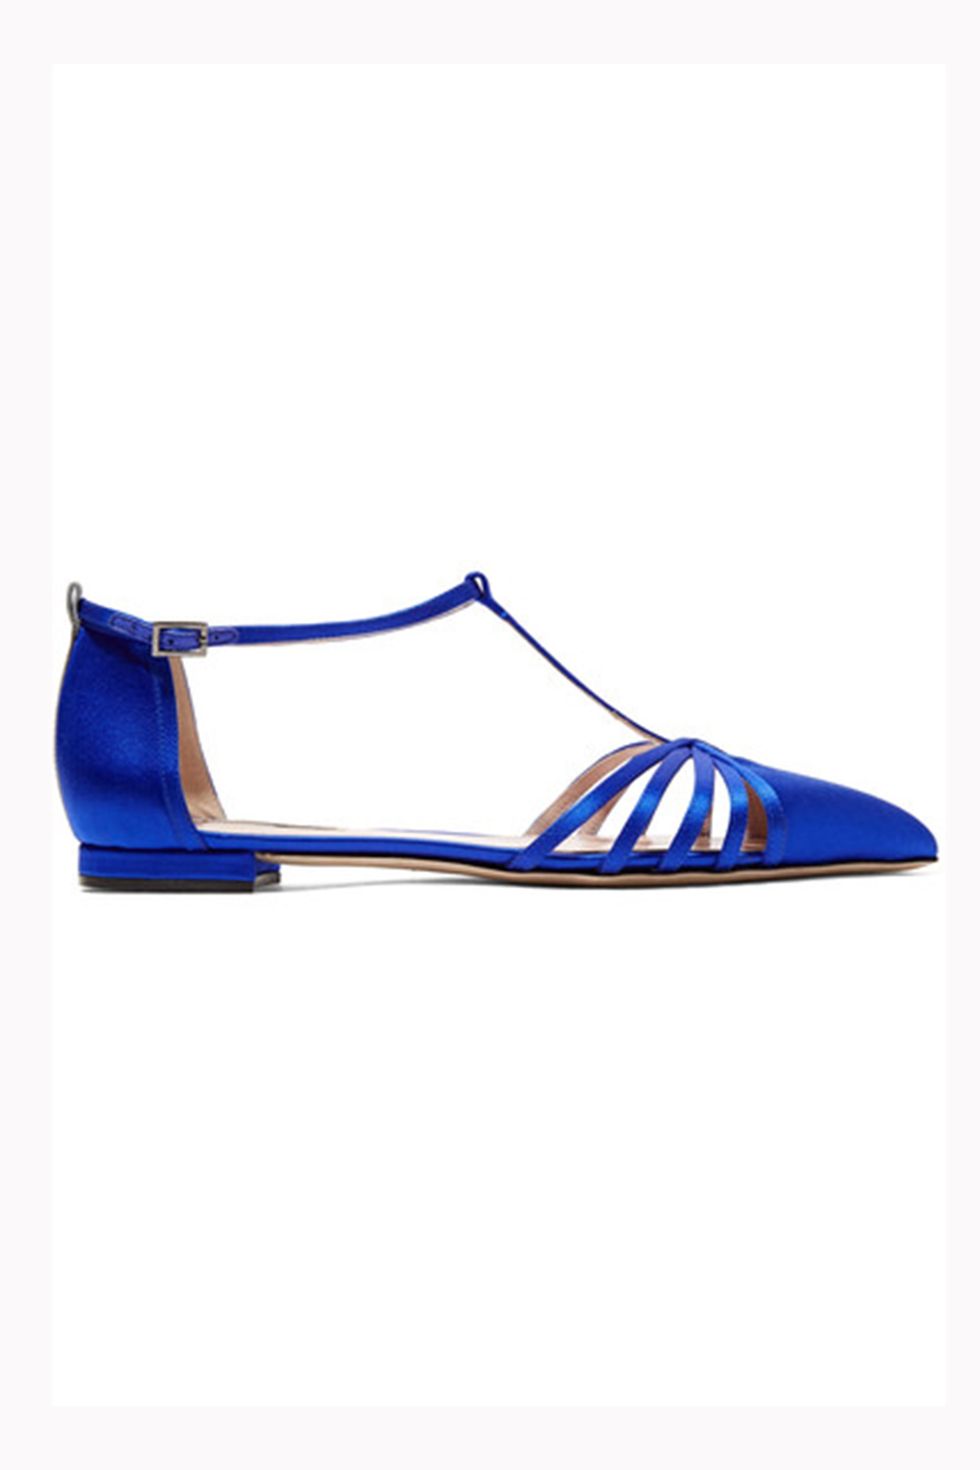 Blue, Product, White, Electric blue, Majorelle blue, Cobalt blue, Azure, Aqua, Walking shoe, Fashion design, 